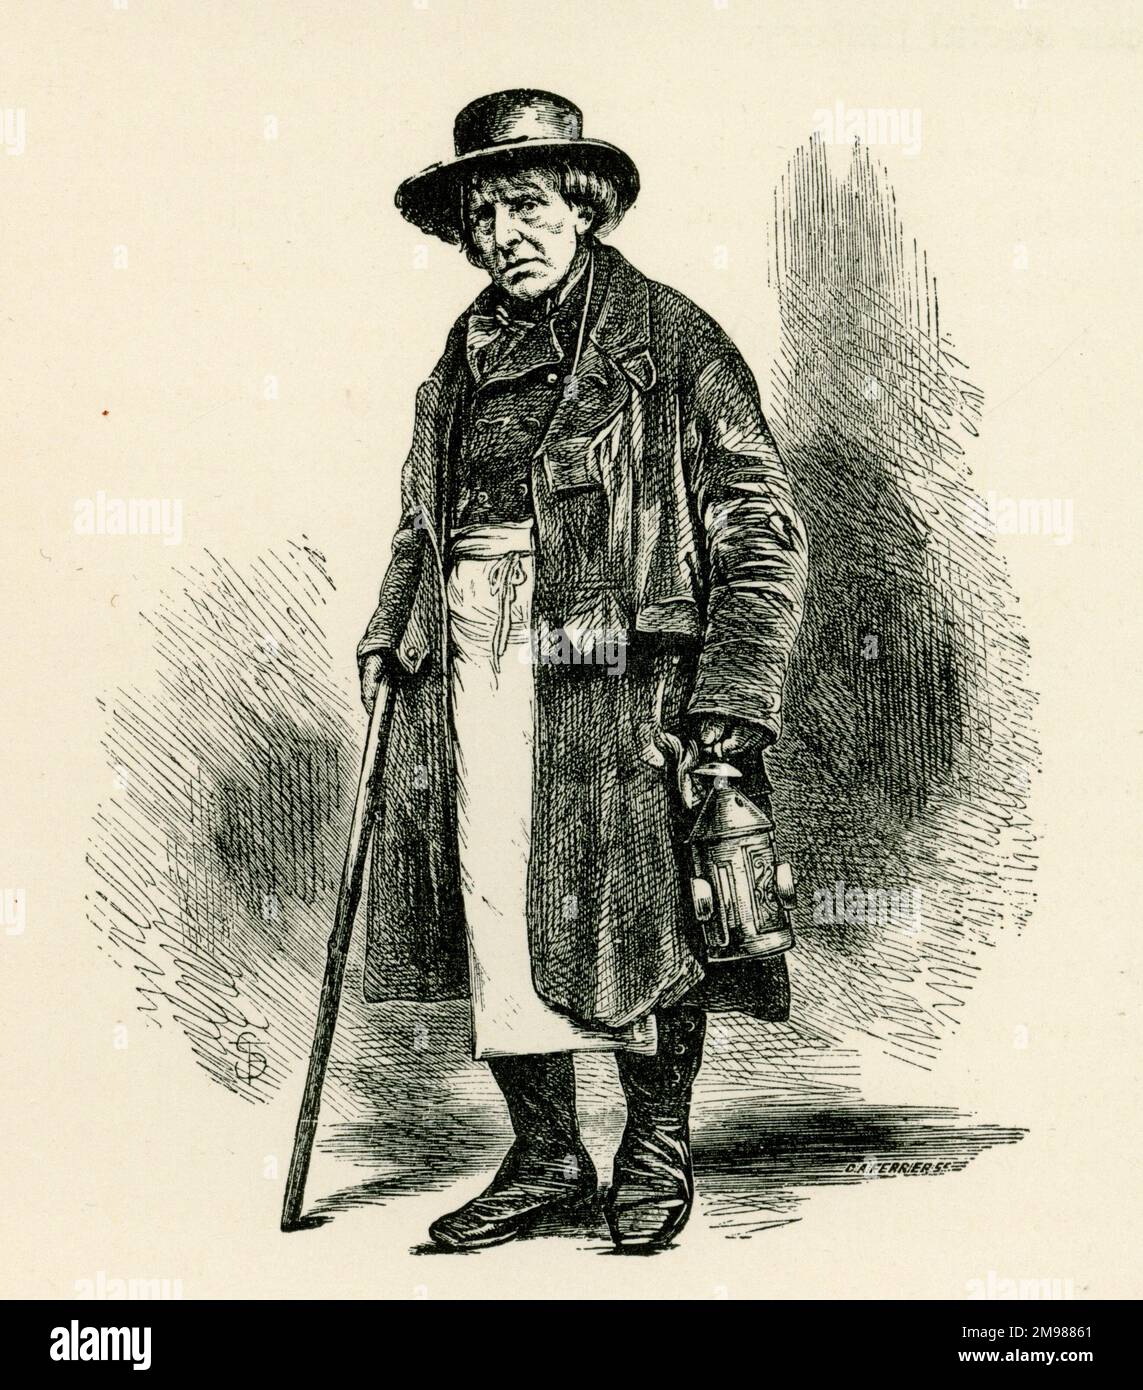 Charaktere aus dem alten London - Charley, ein alter Pfarrer oder Nachtwächter, mit einer Laterne. Stockfoto